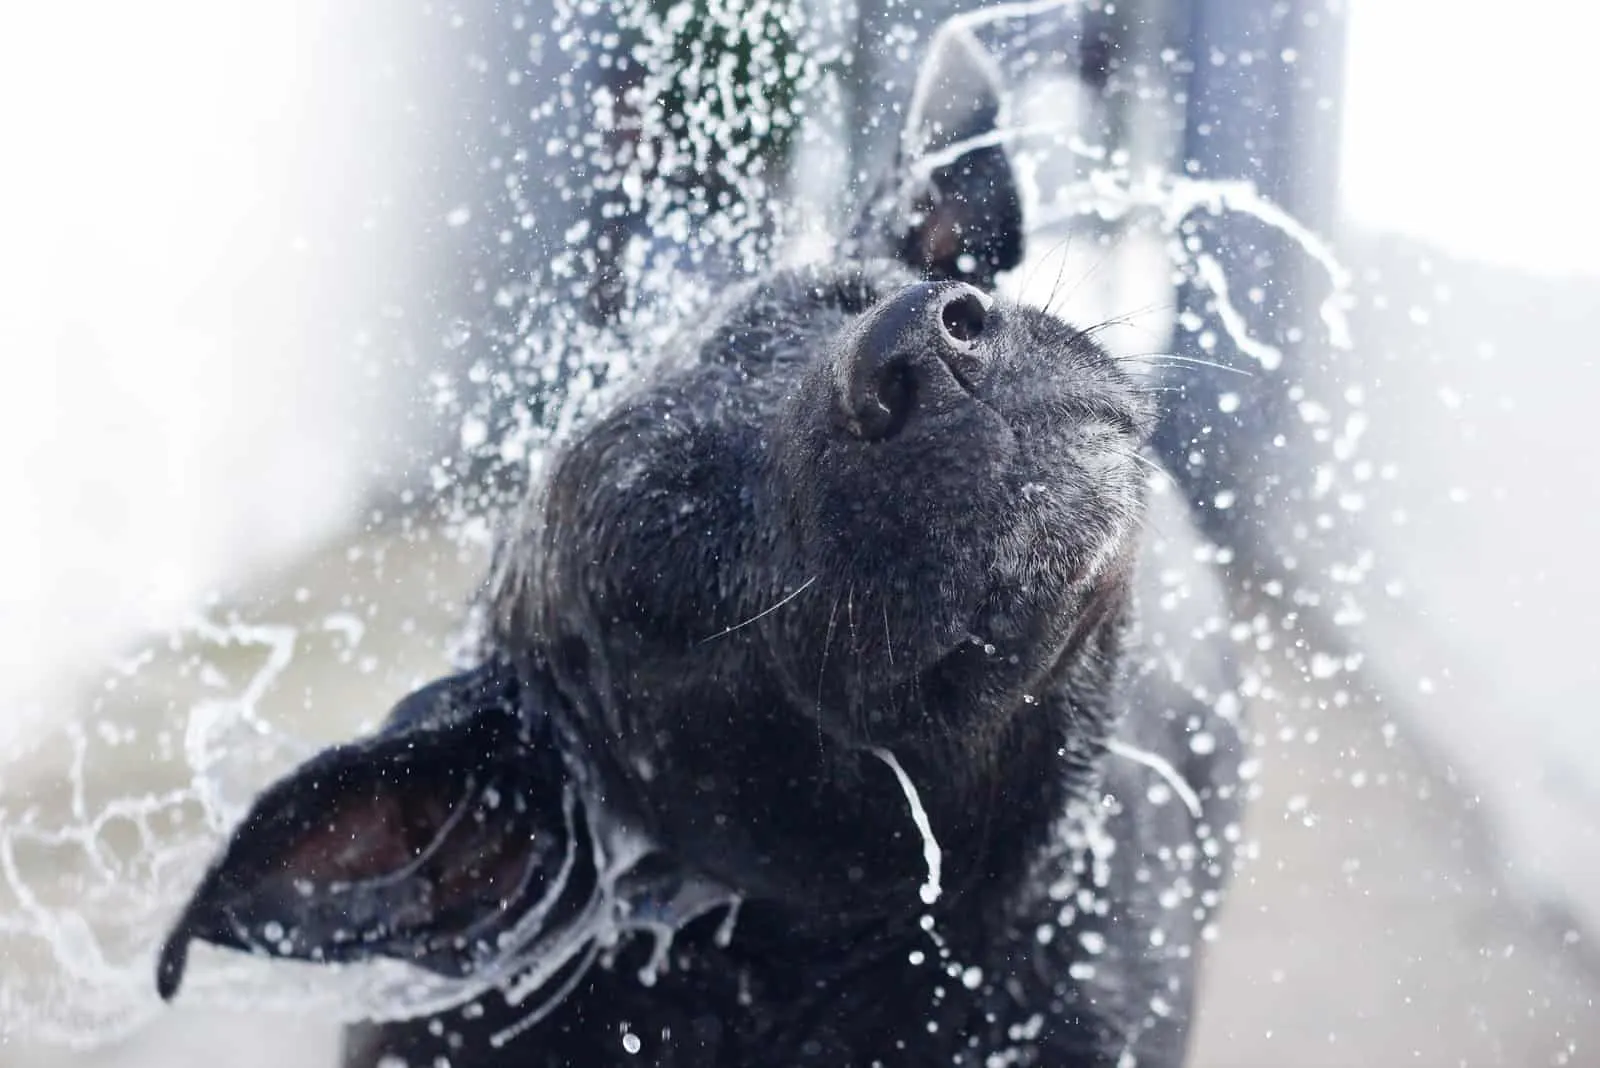 a black dog bathes